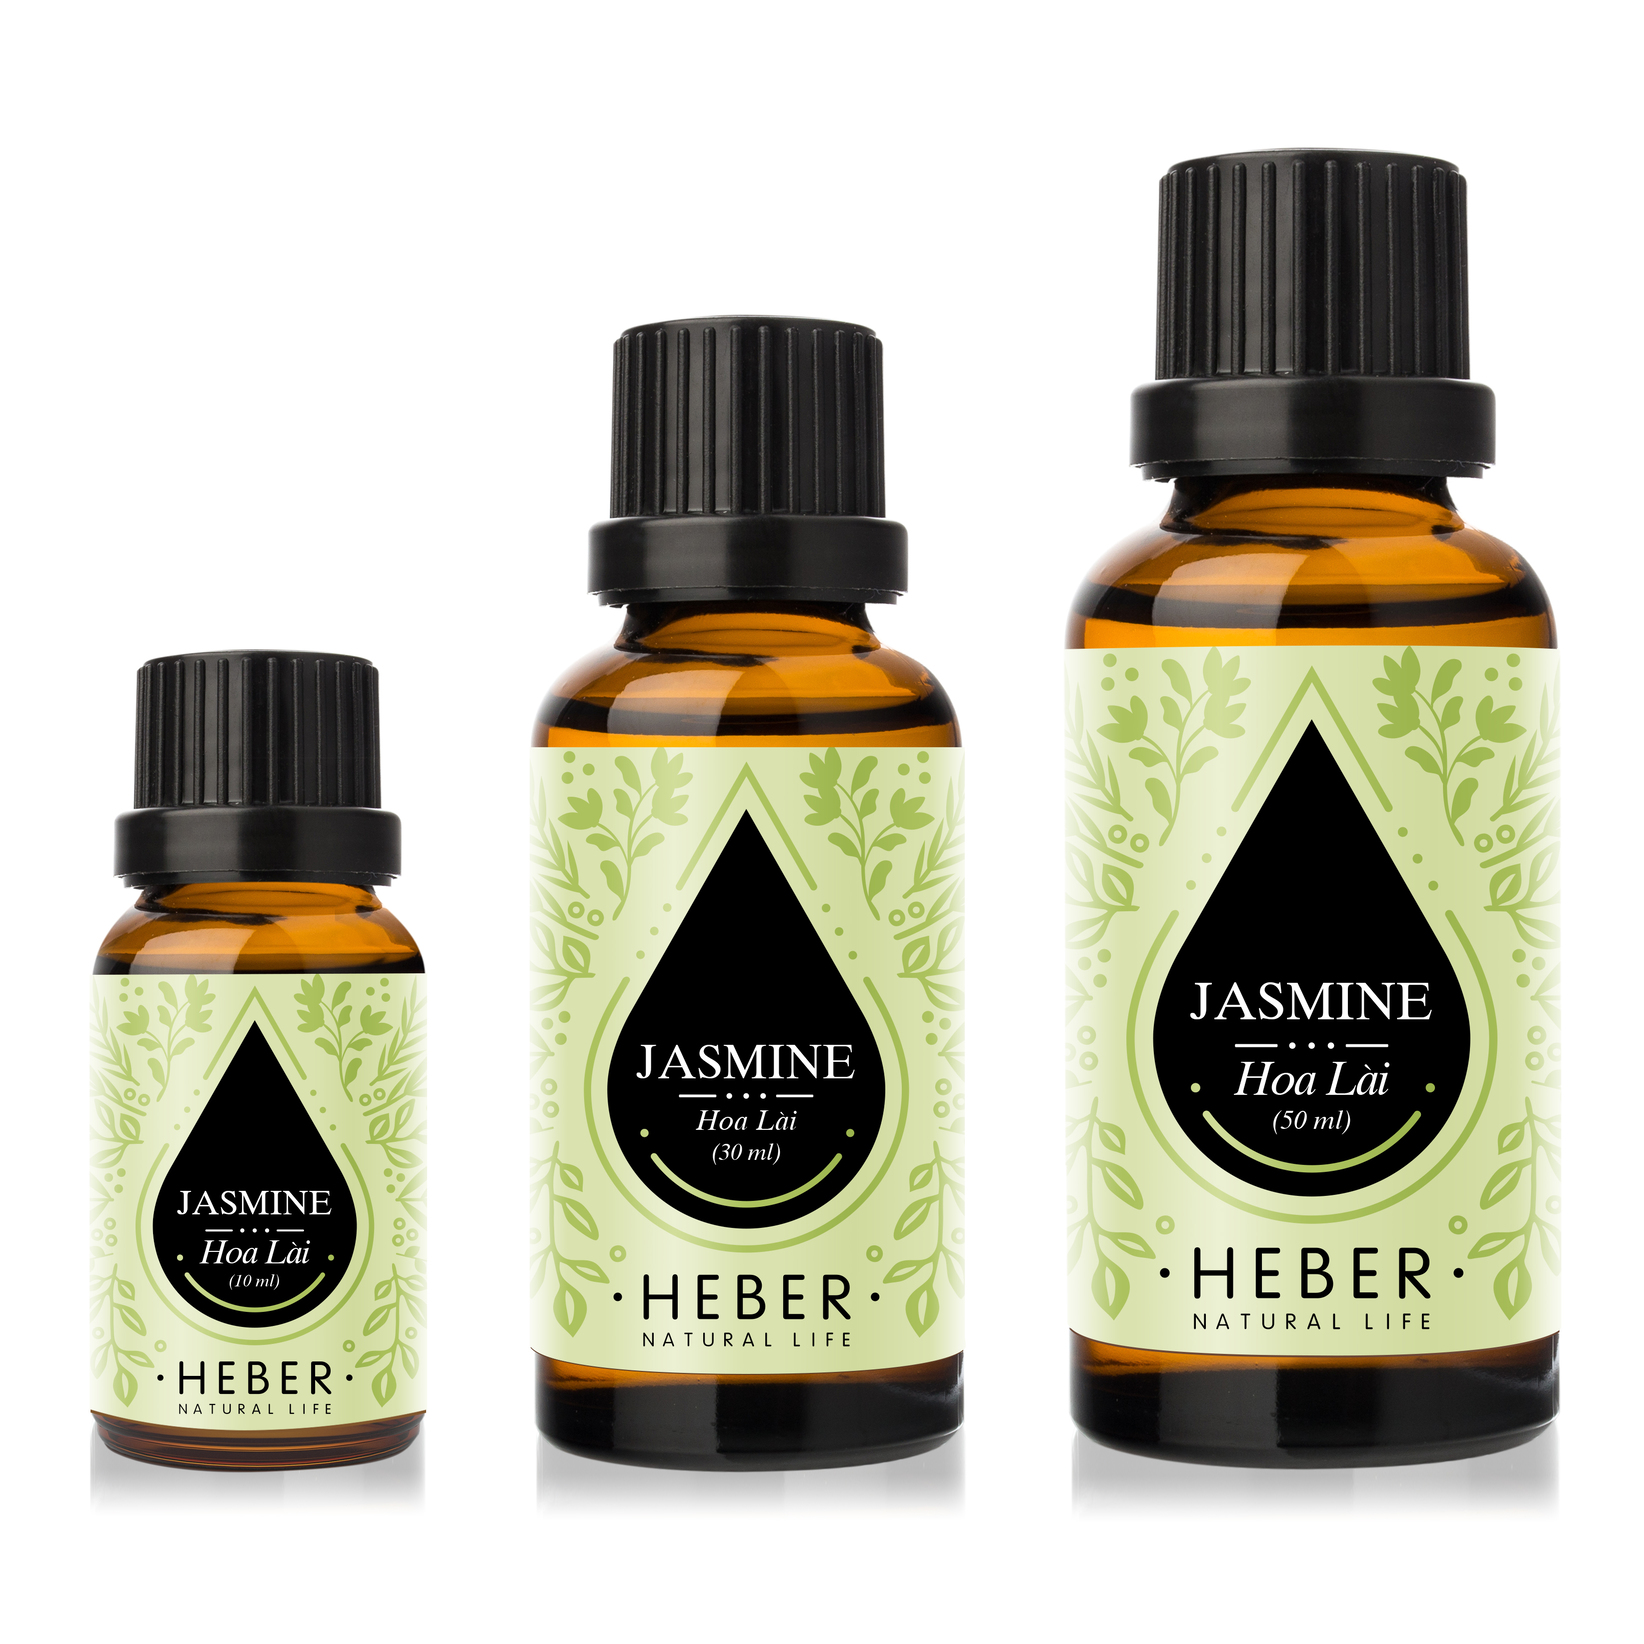 Tinh Dầu Hoa Lài Jasmine Essential Oil Heber | 100% Thiên Nhiên Nguyên Chất Cao Cấp | Nhập Khẩu Từ Ấn Độ | Kiểm Nghiệm Quatest 3 | Xông Thơm Phòng | Hương Dịu Nhẹ